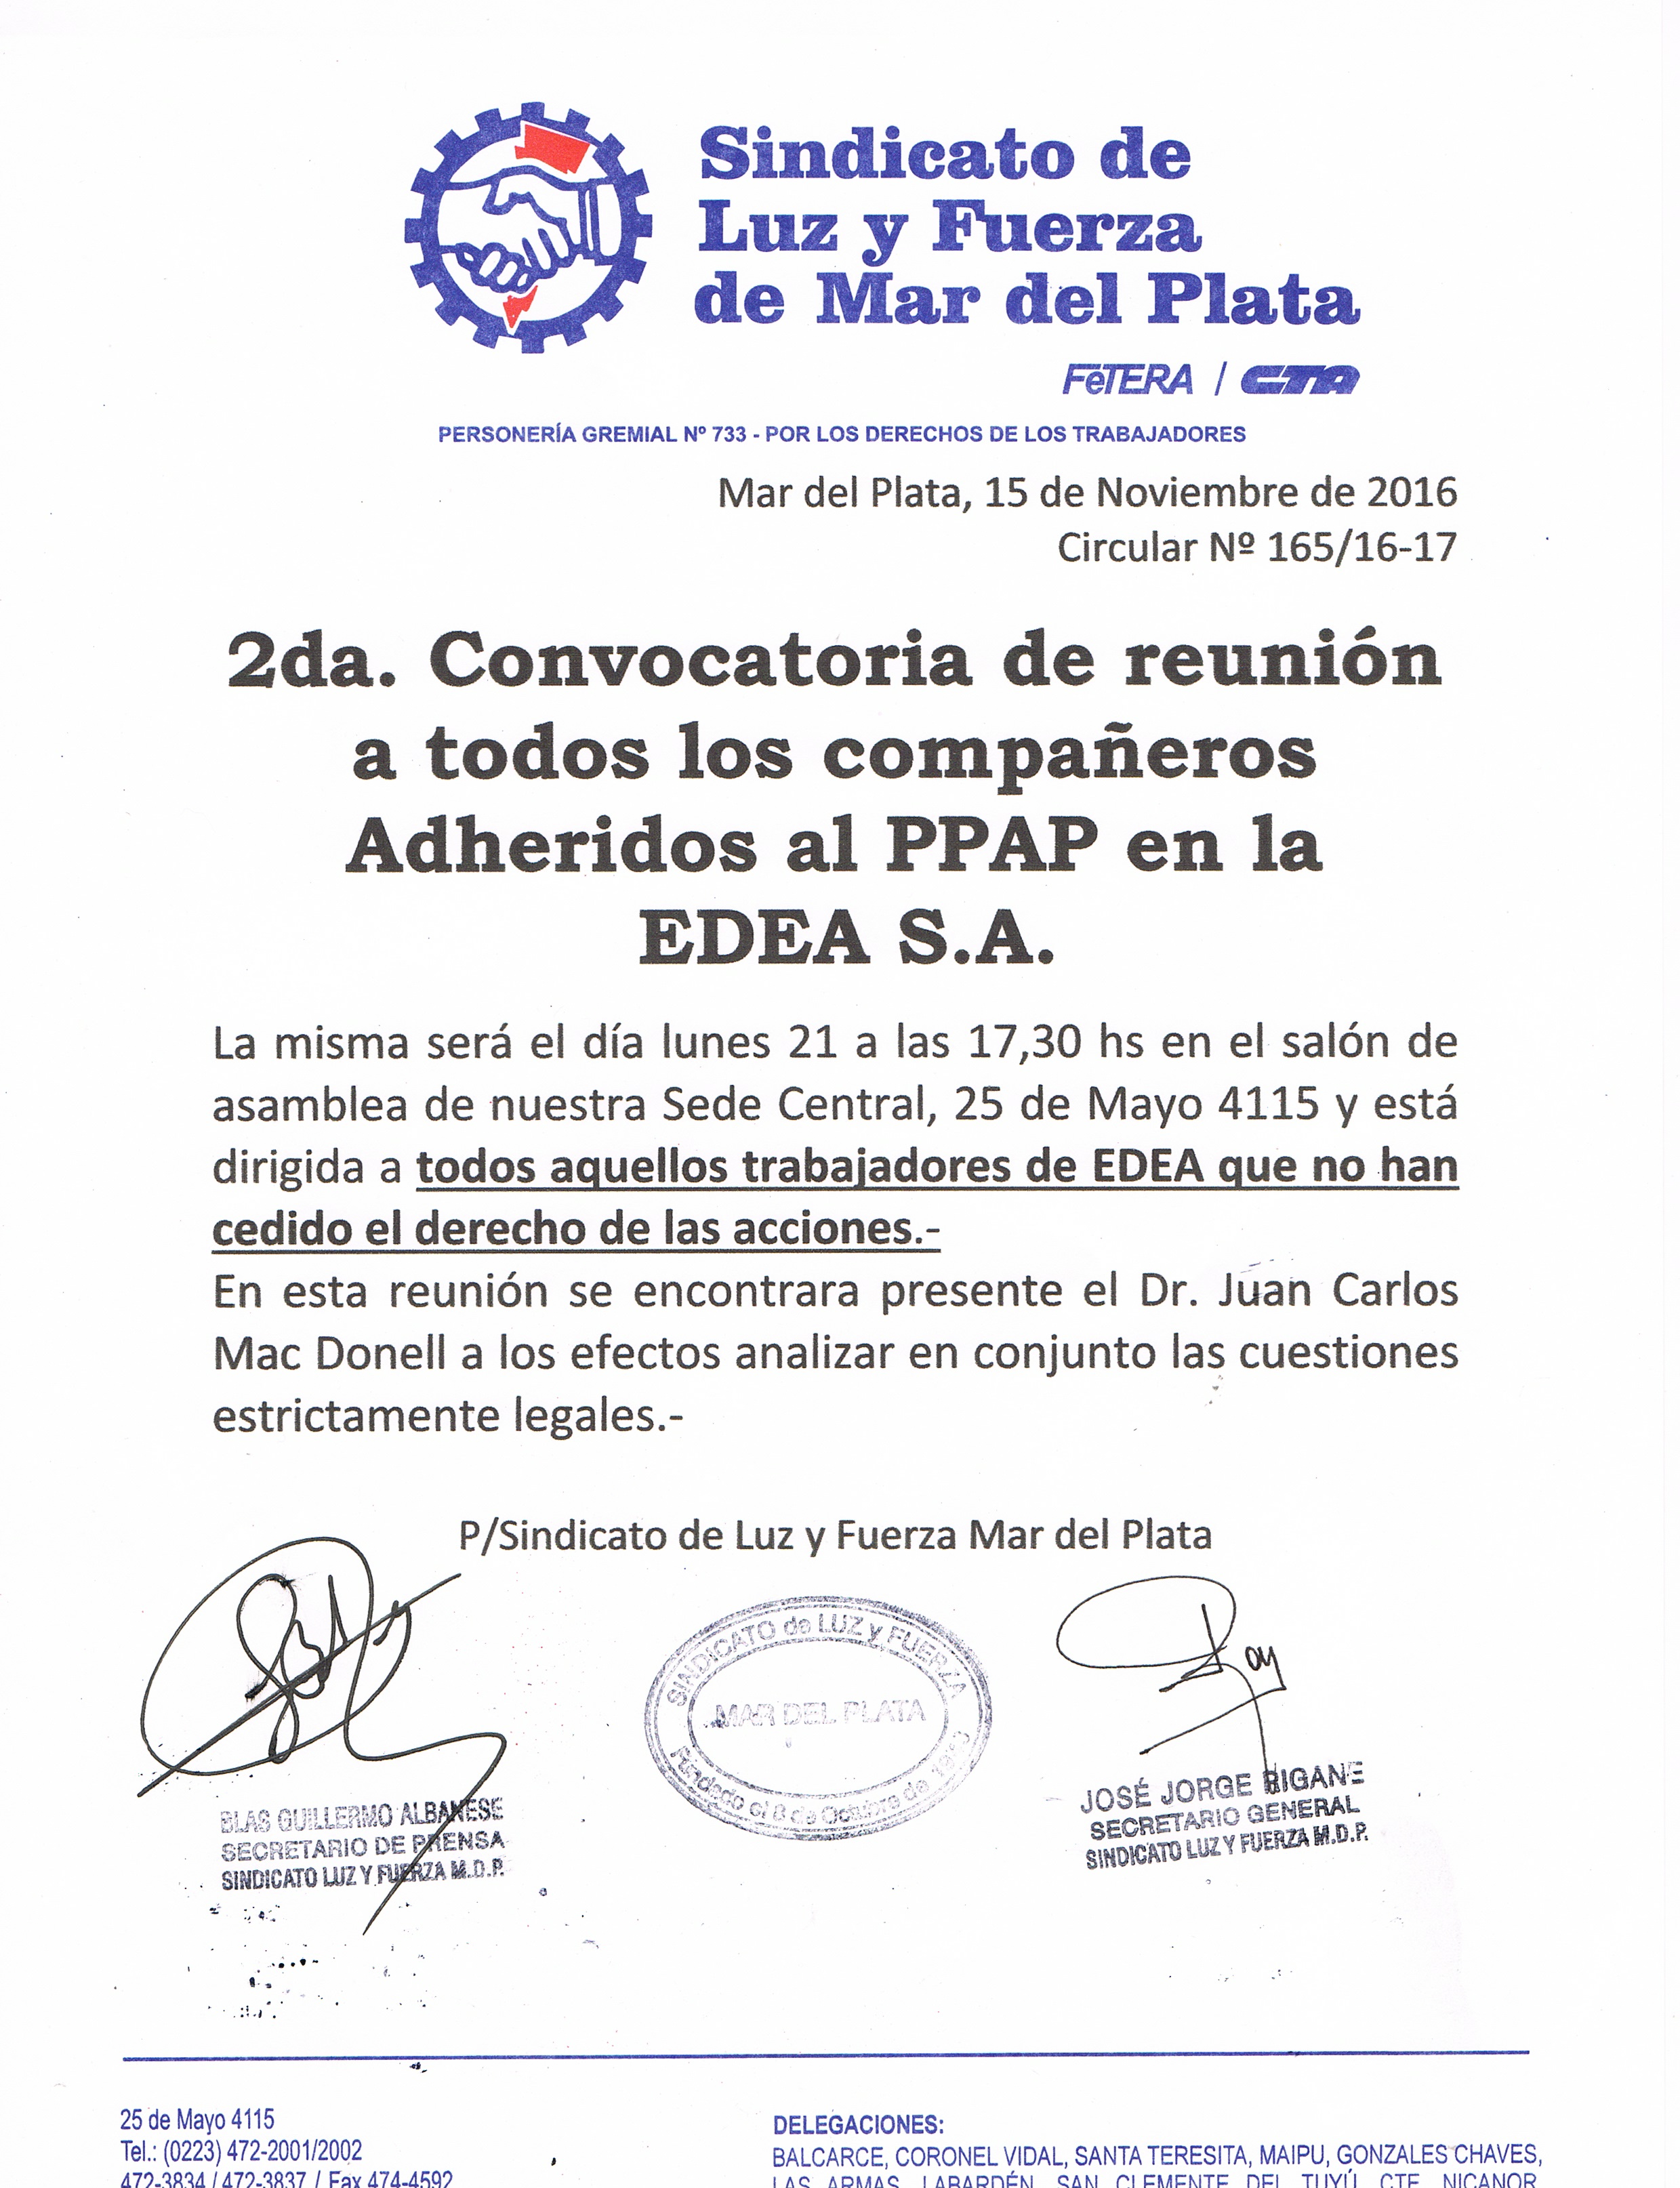 2da. Convocatoria de reunión a todos los compañeros Adheridos al PPAP en la EDEA S.A.